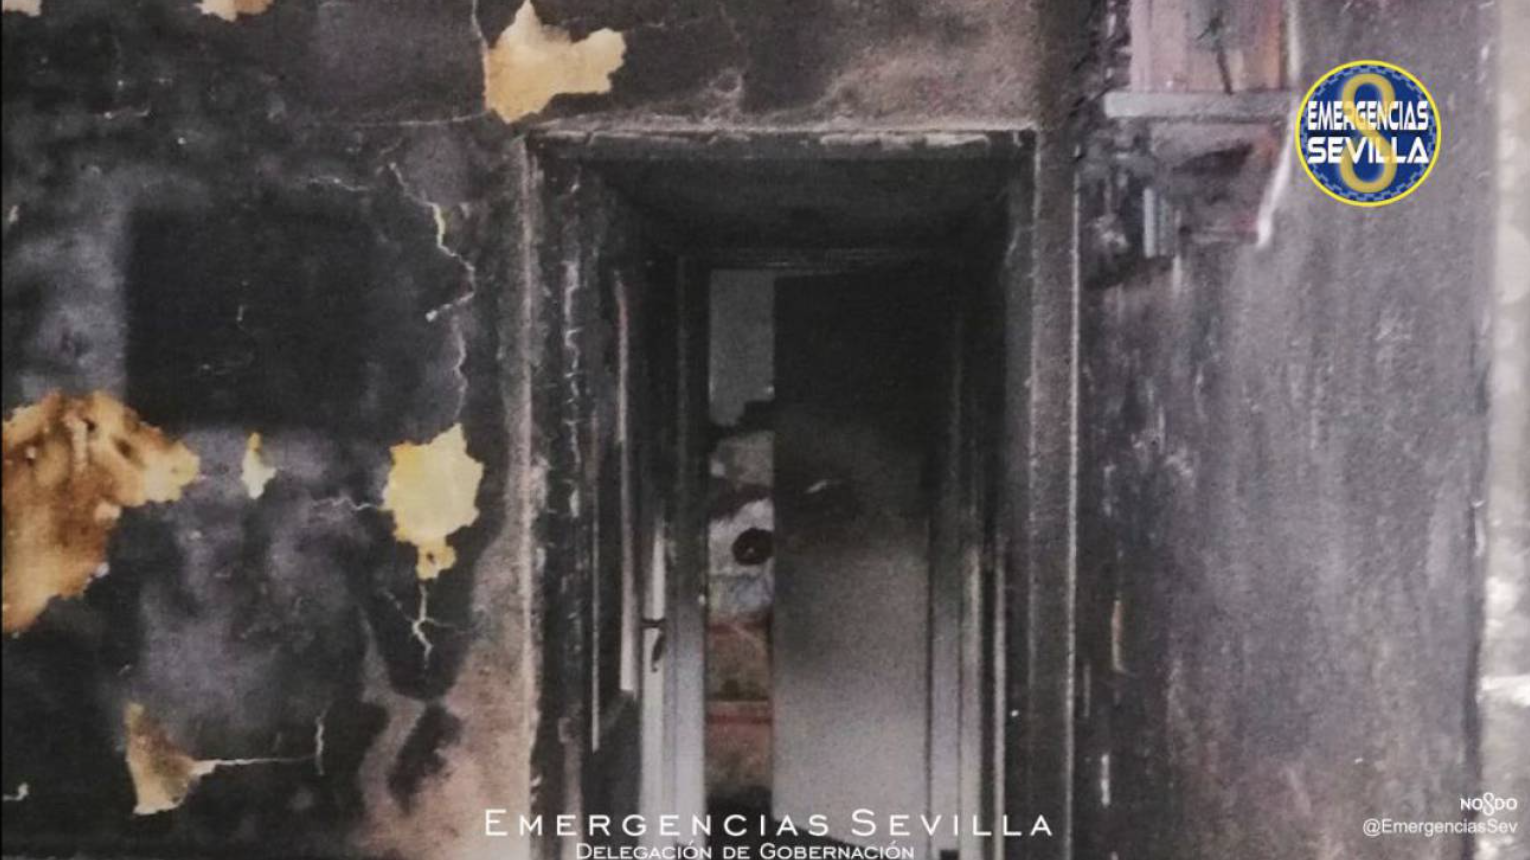 Mueren en Sevilla dos hermanos septuagenarios que vivían solos al incendiarse su vivienda. Foto: Emergencias Sevilla